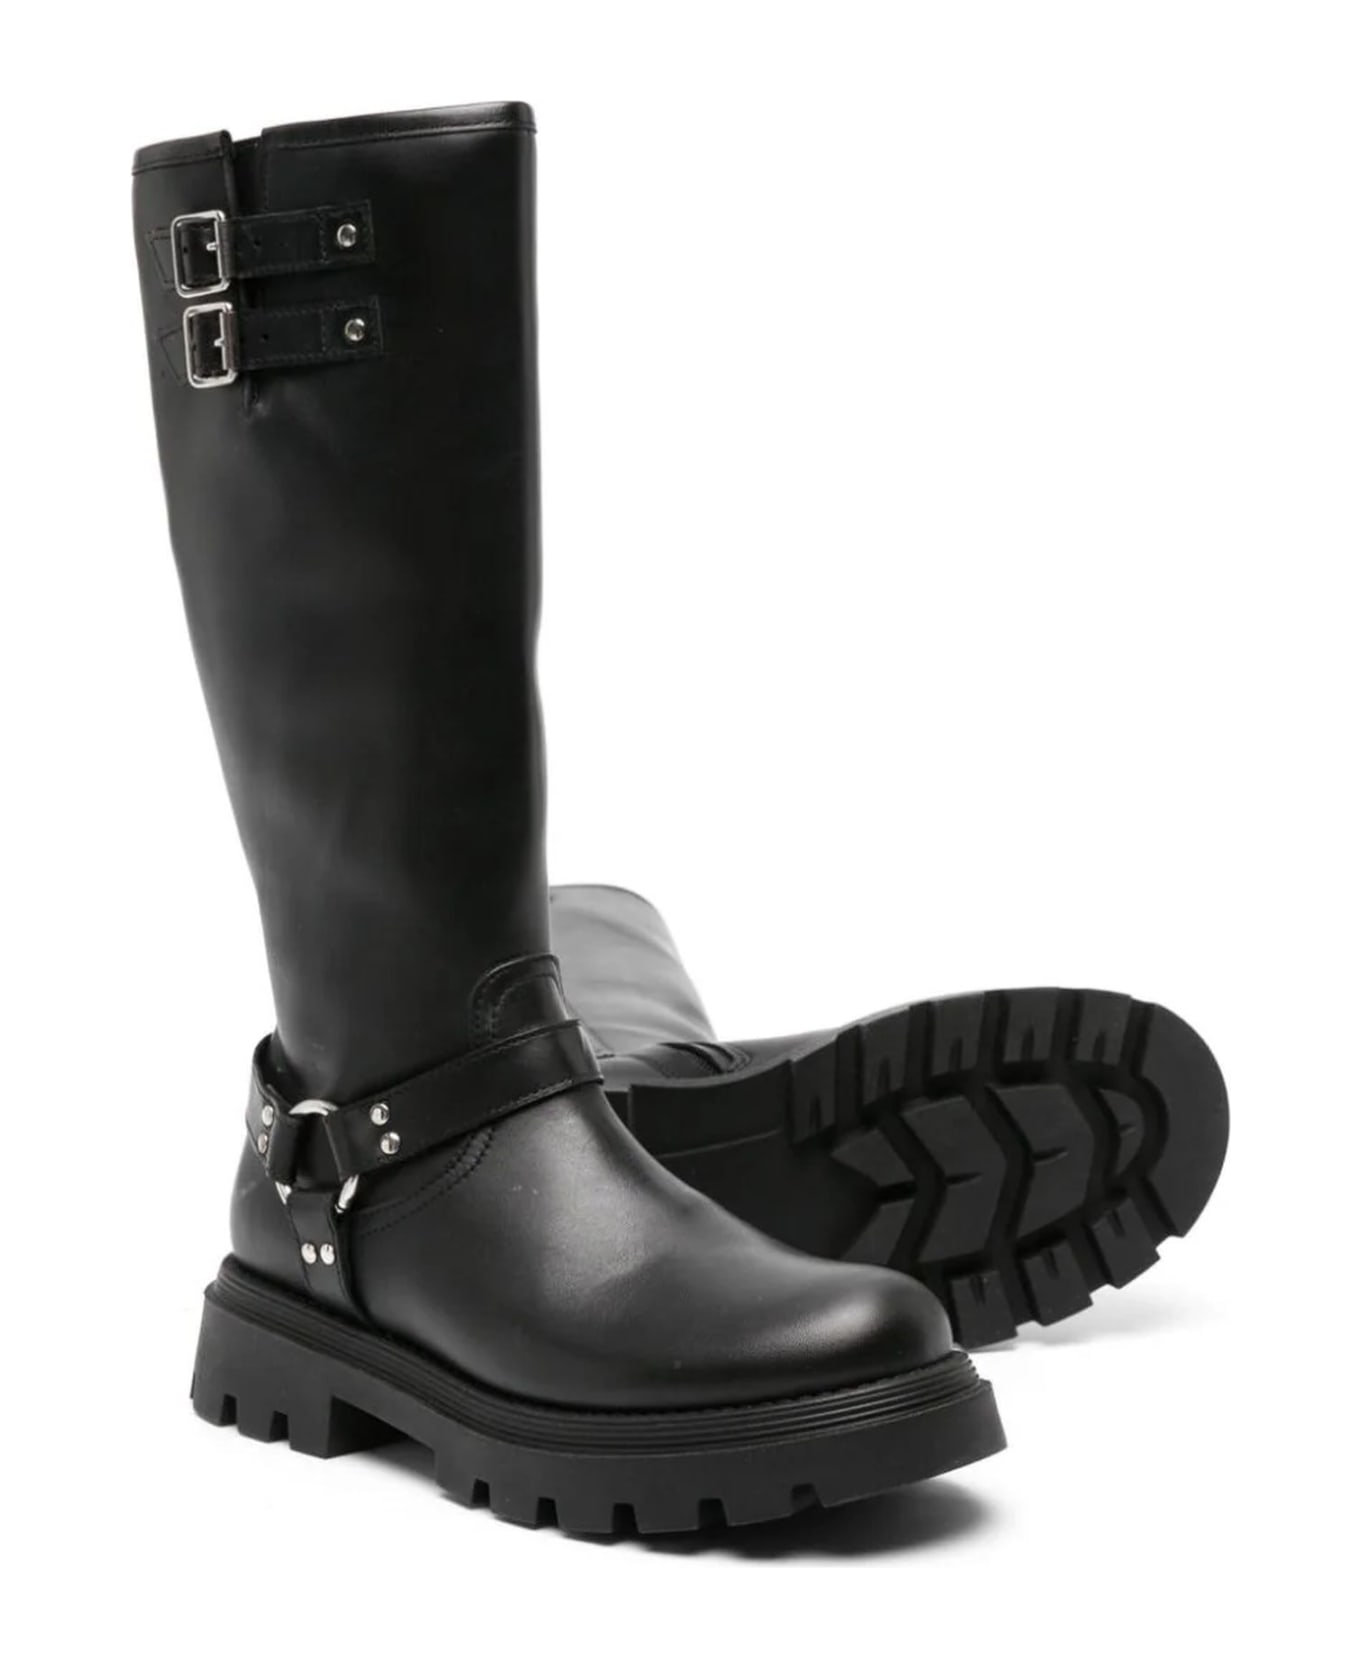 Gallucci Boots Black - Black